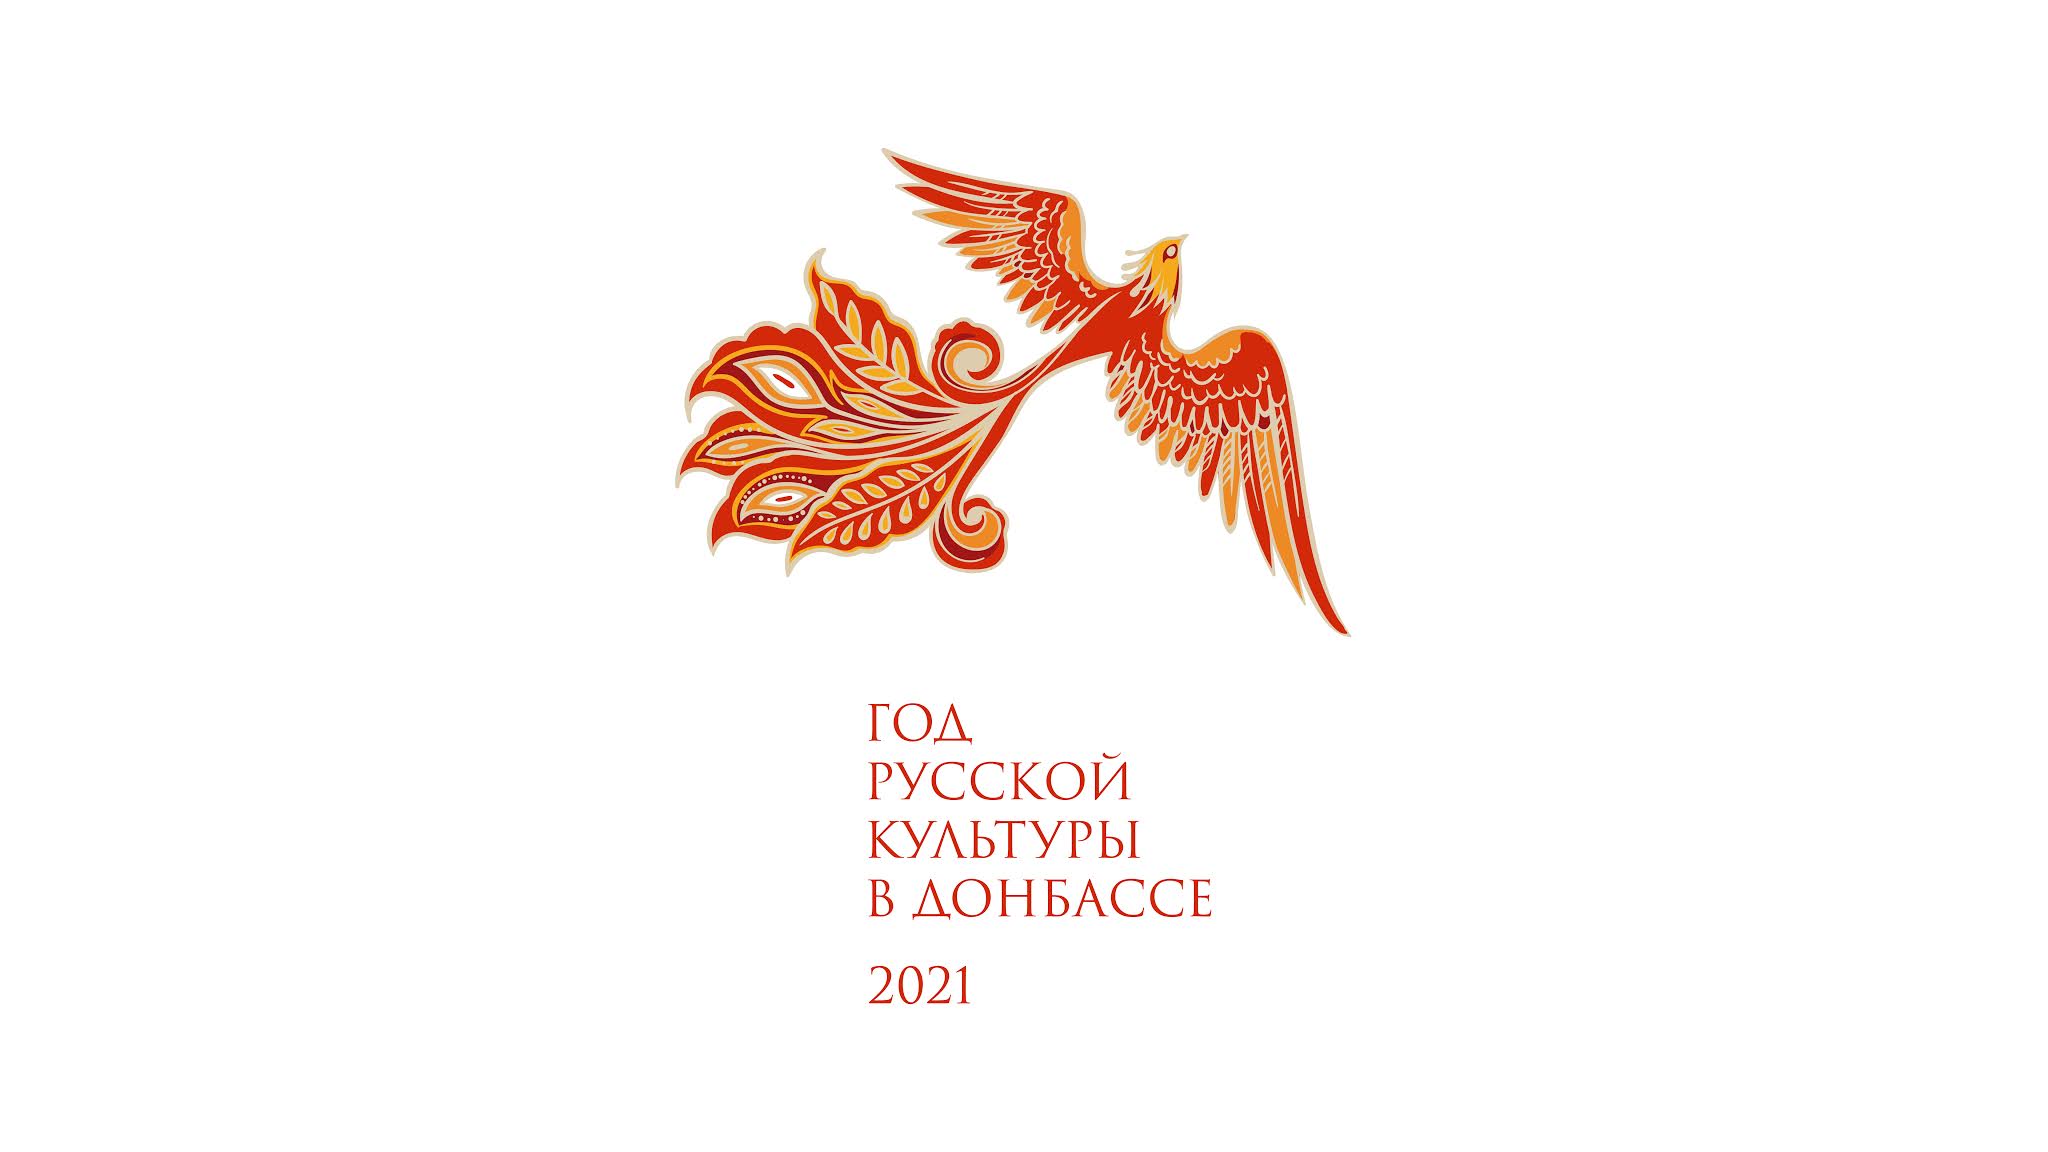 Символы россии 2022 год